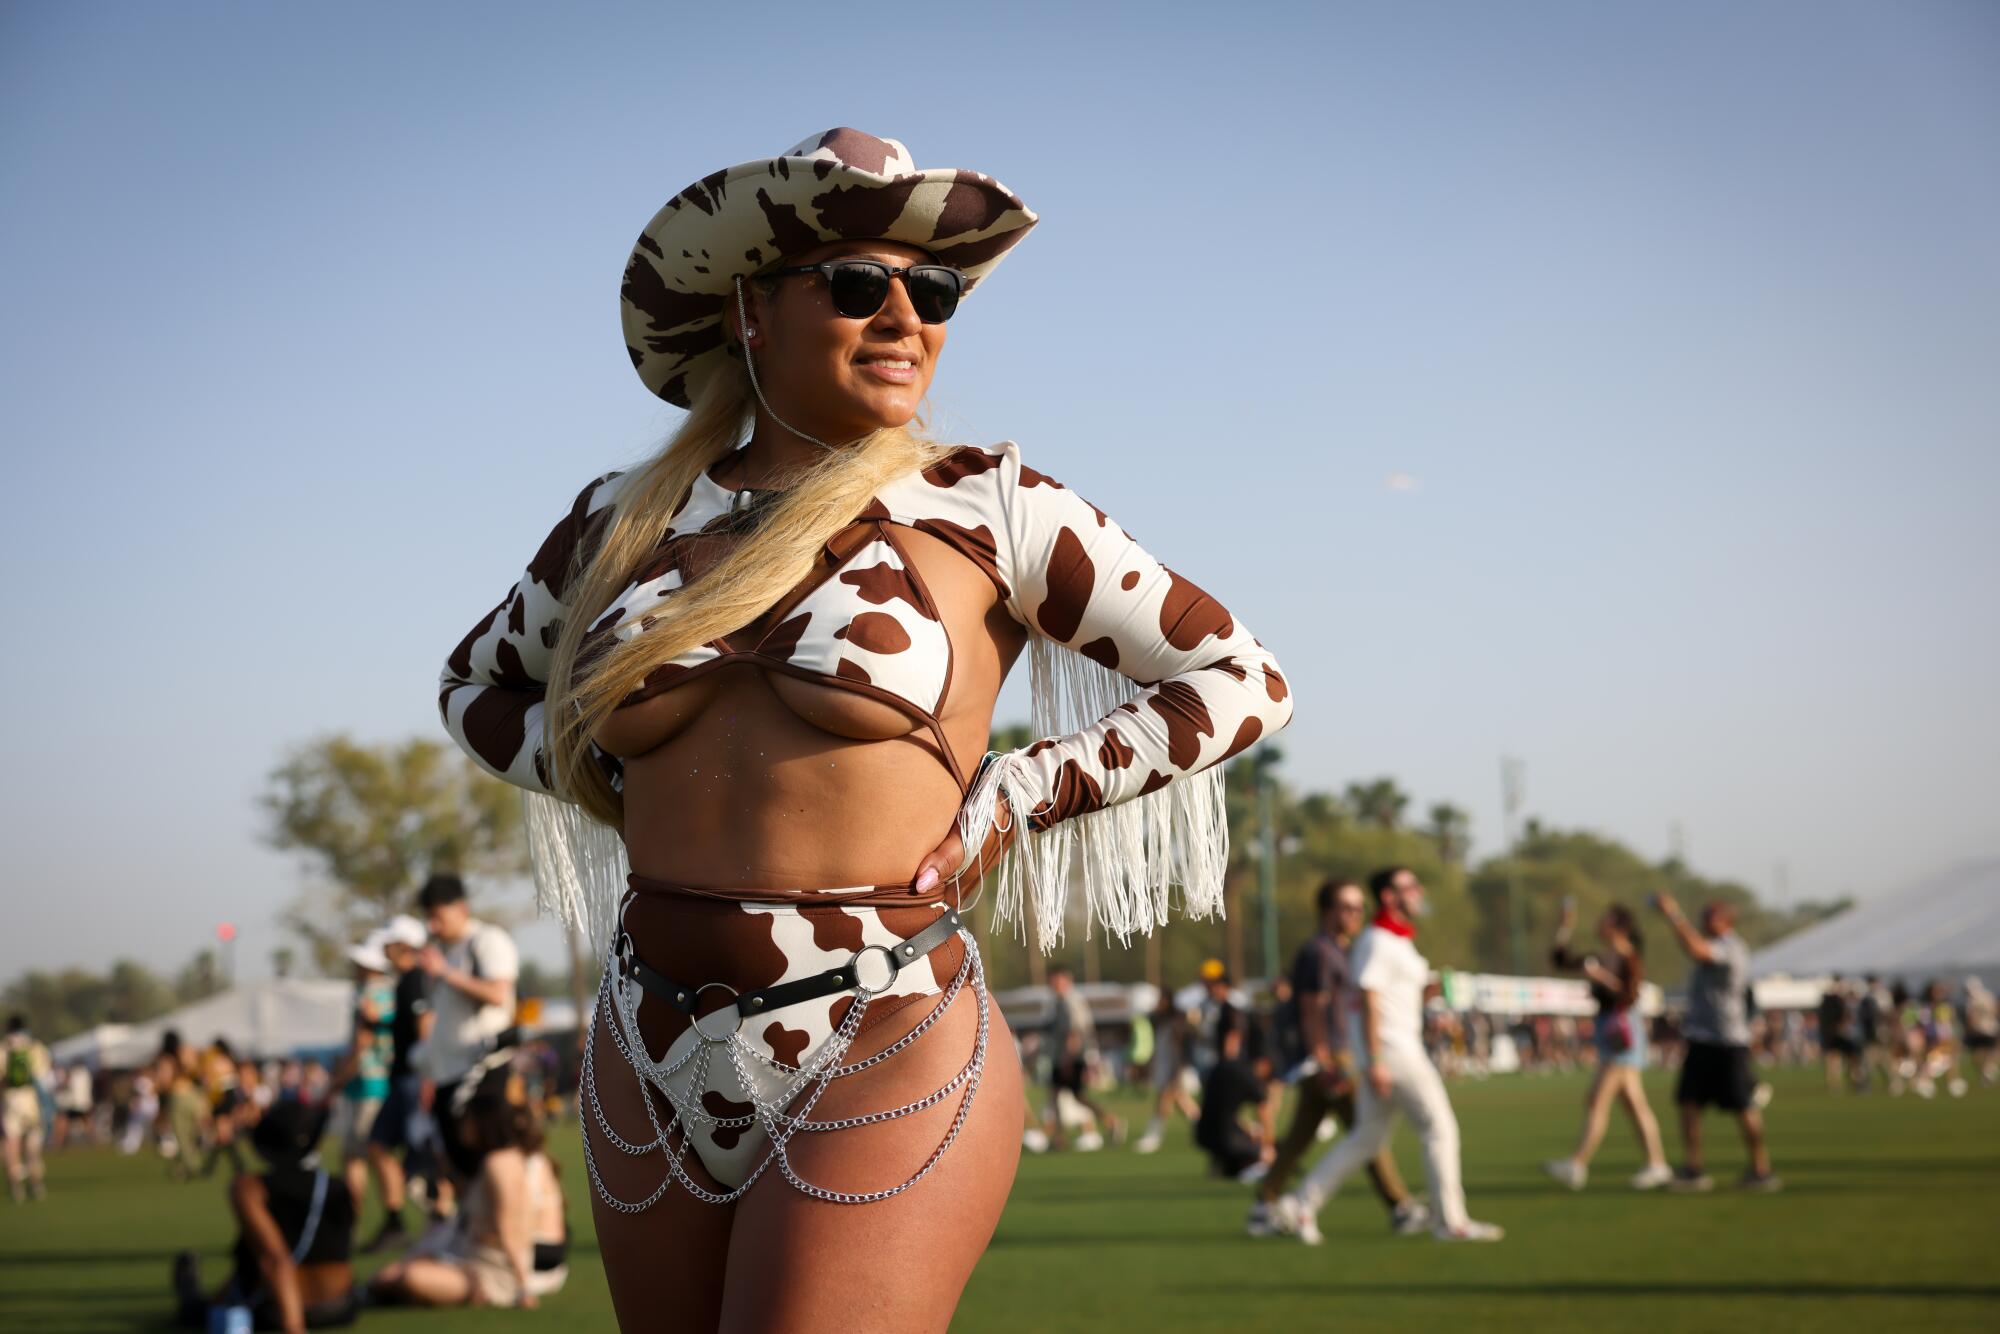 33 岁的丘拉维斯塔 (Chula Vista) 布伦达·拉米雷斯 (Brenda Ramirez) 在科切拉 (Coachella) 音乐节上身着奶牛印花套装，在沙漠阳光下闪闪发光。